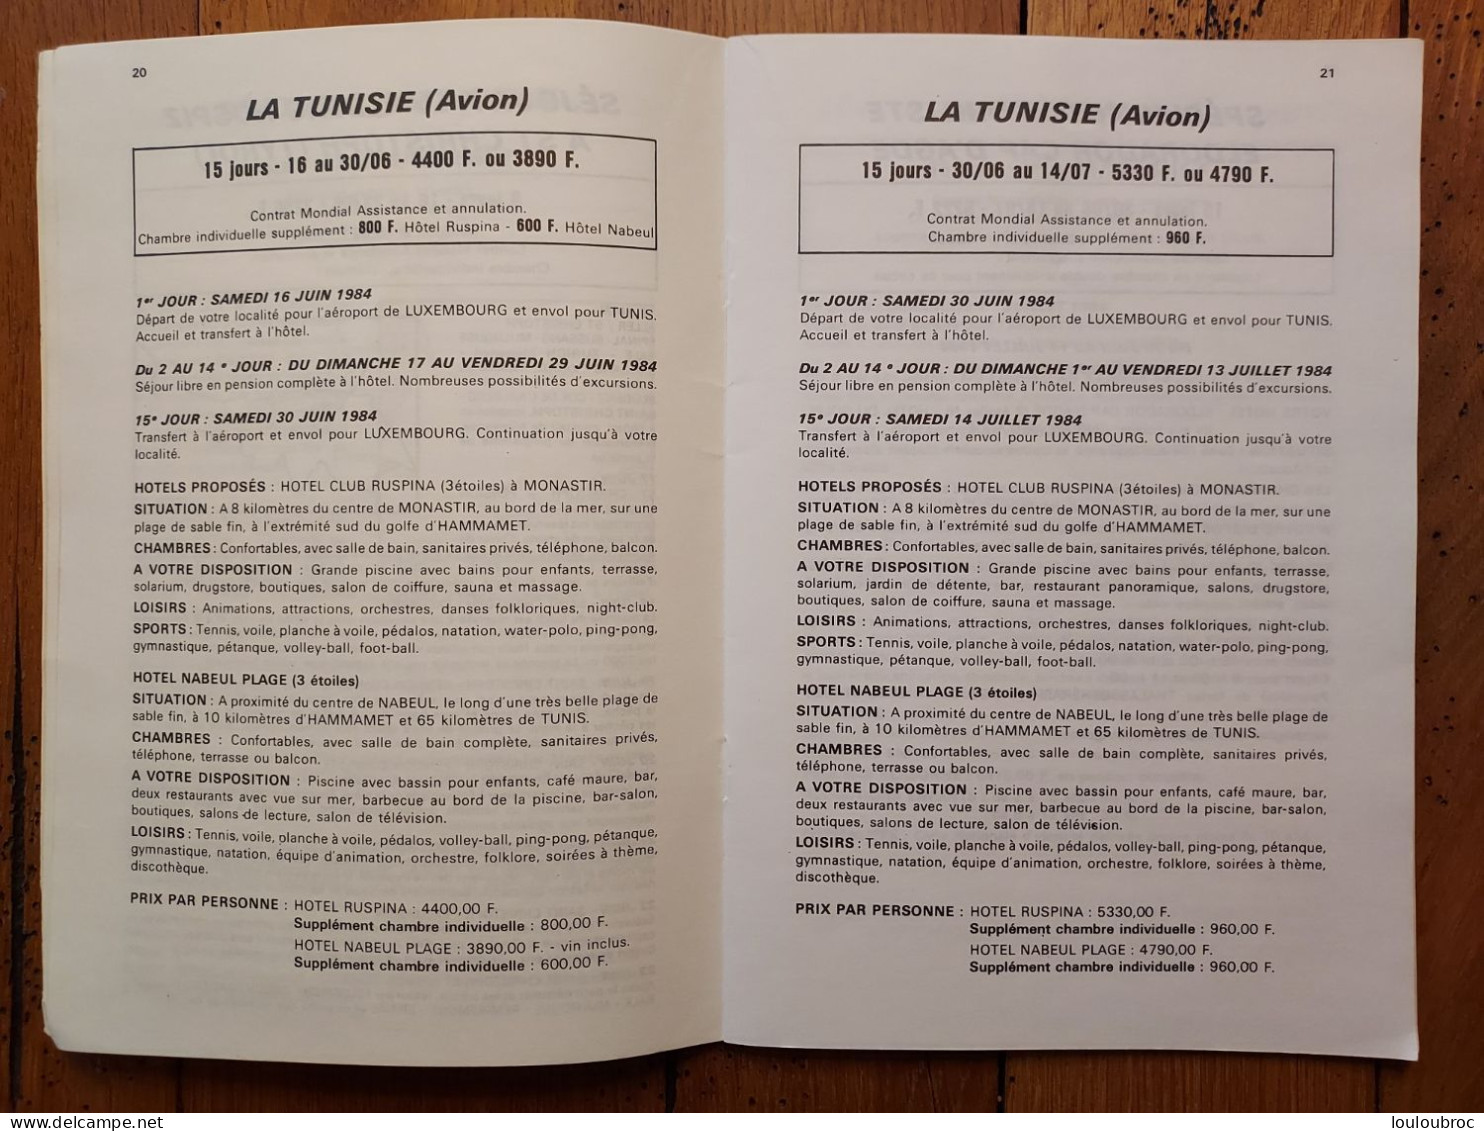 LIVRET PIOT TOURISME 1984 LIVRET DE 48 PAGES DIFFERENTES DESTINATIONS - Toeristische Brochures